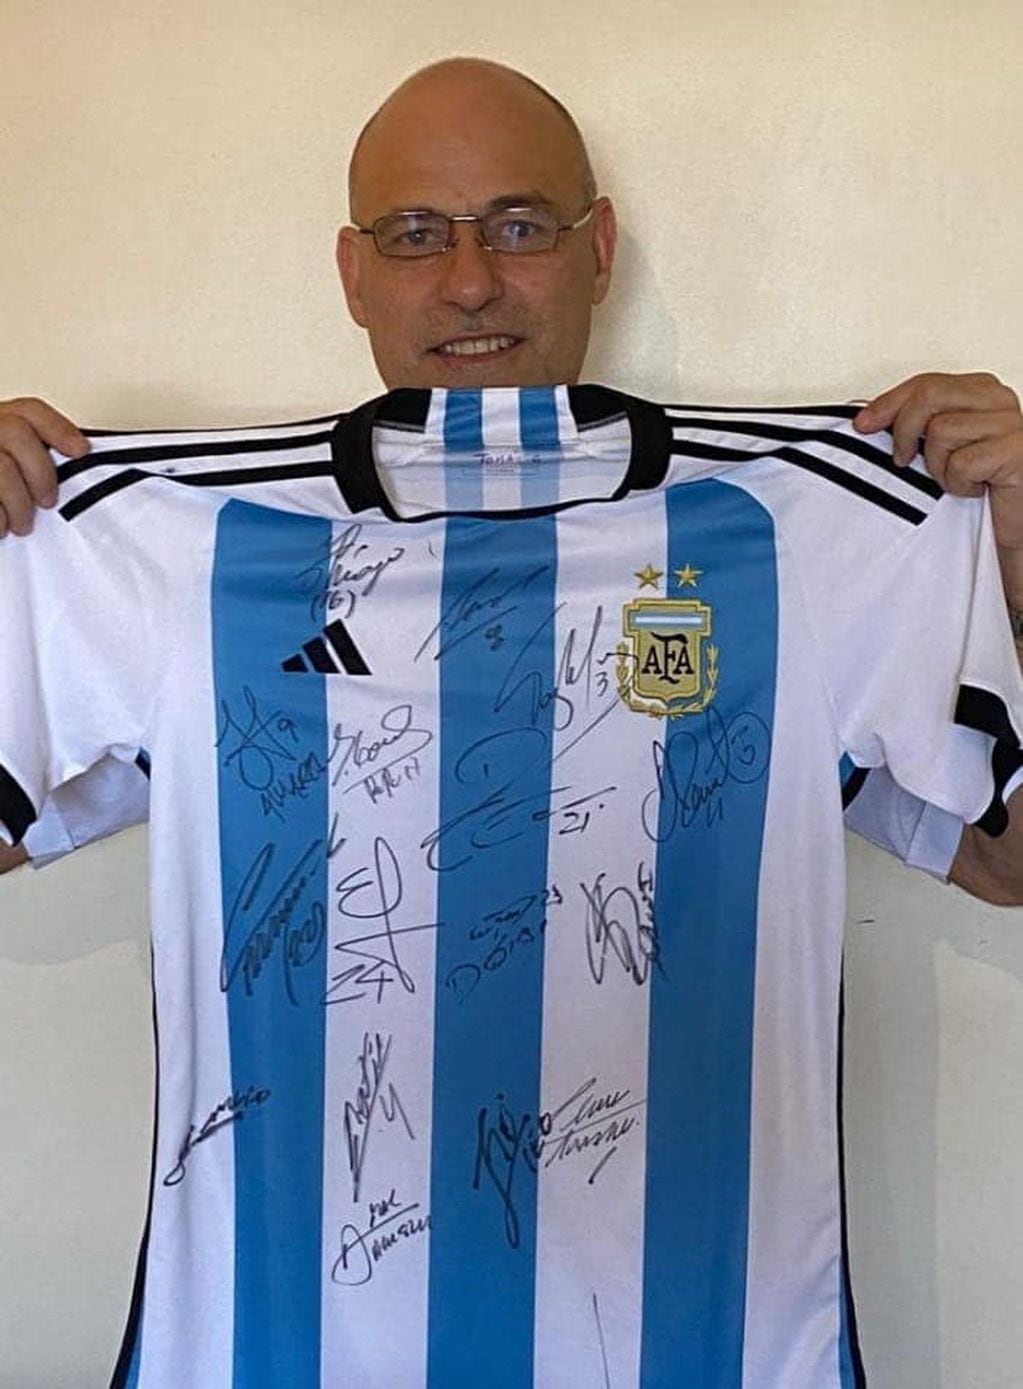 Edgar Giurdanella no sale del asombro. Comandó el vuelo de Aerolíneas Argentina que trajo de regreso a la Selección campeona del mundo.